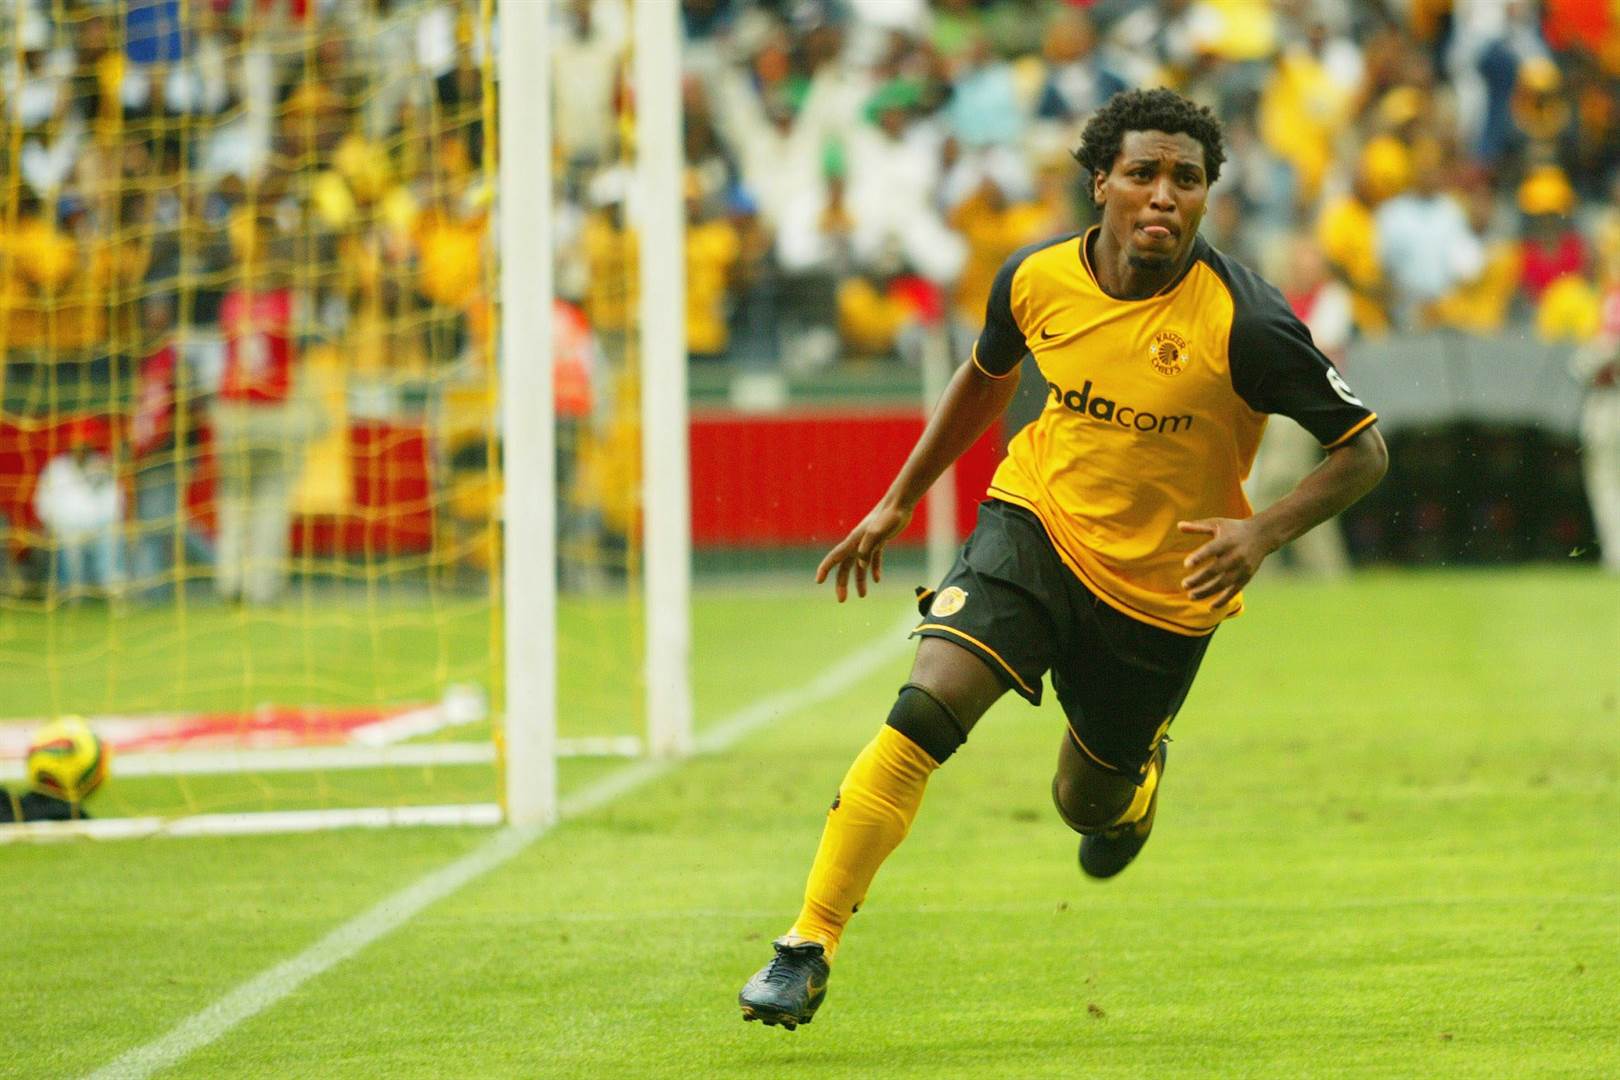 3. Mabhuti Khenyeza - 110 goals